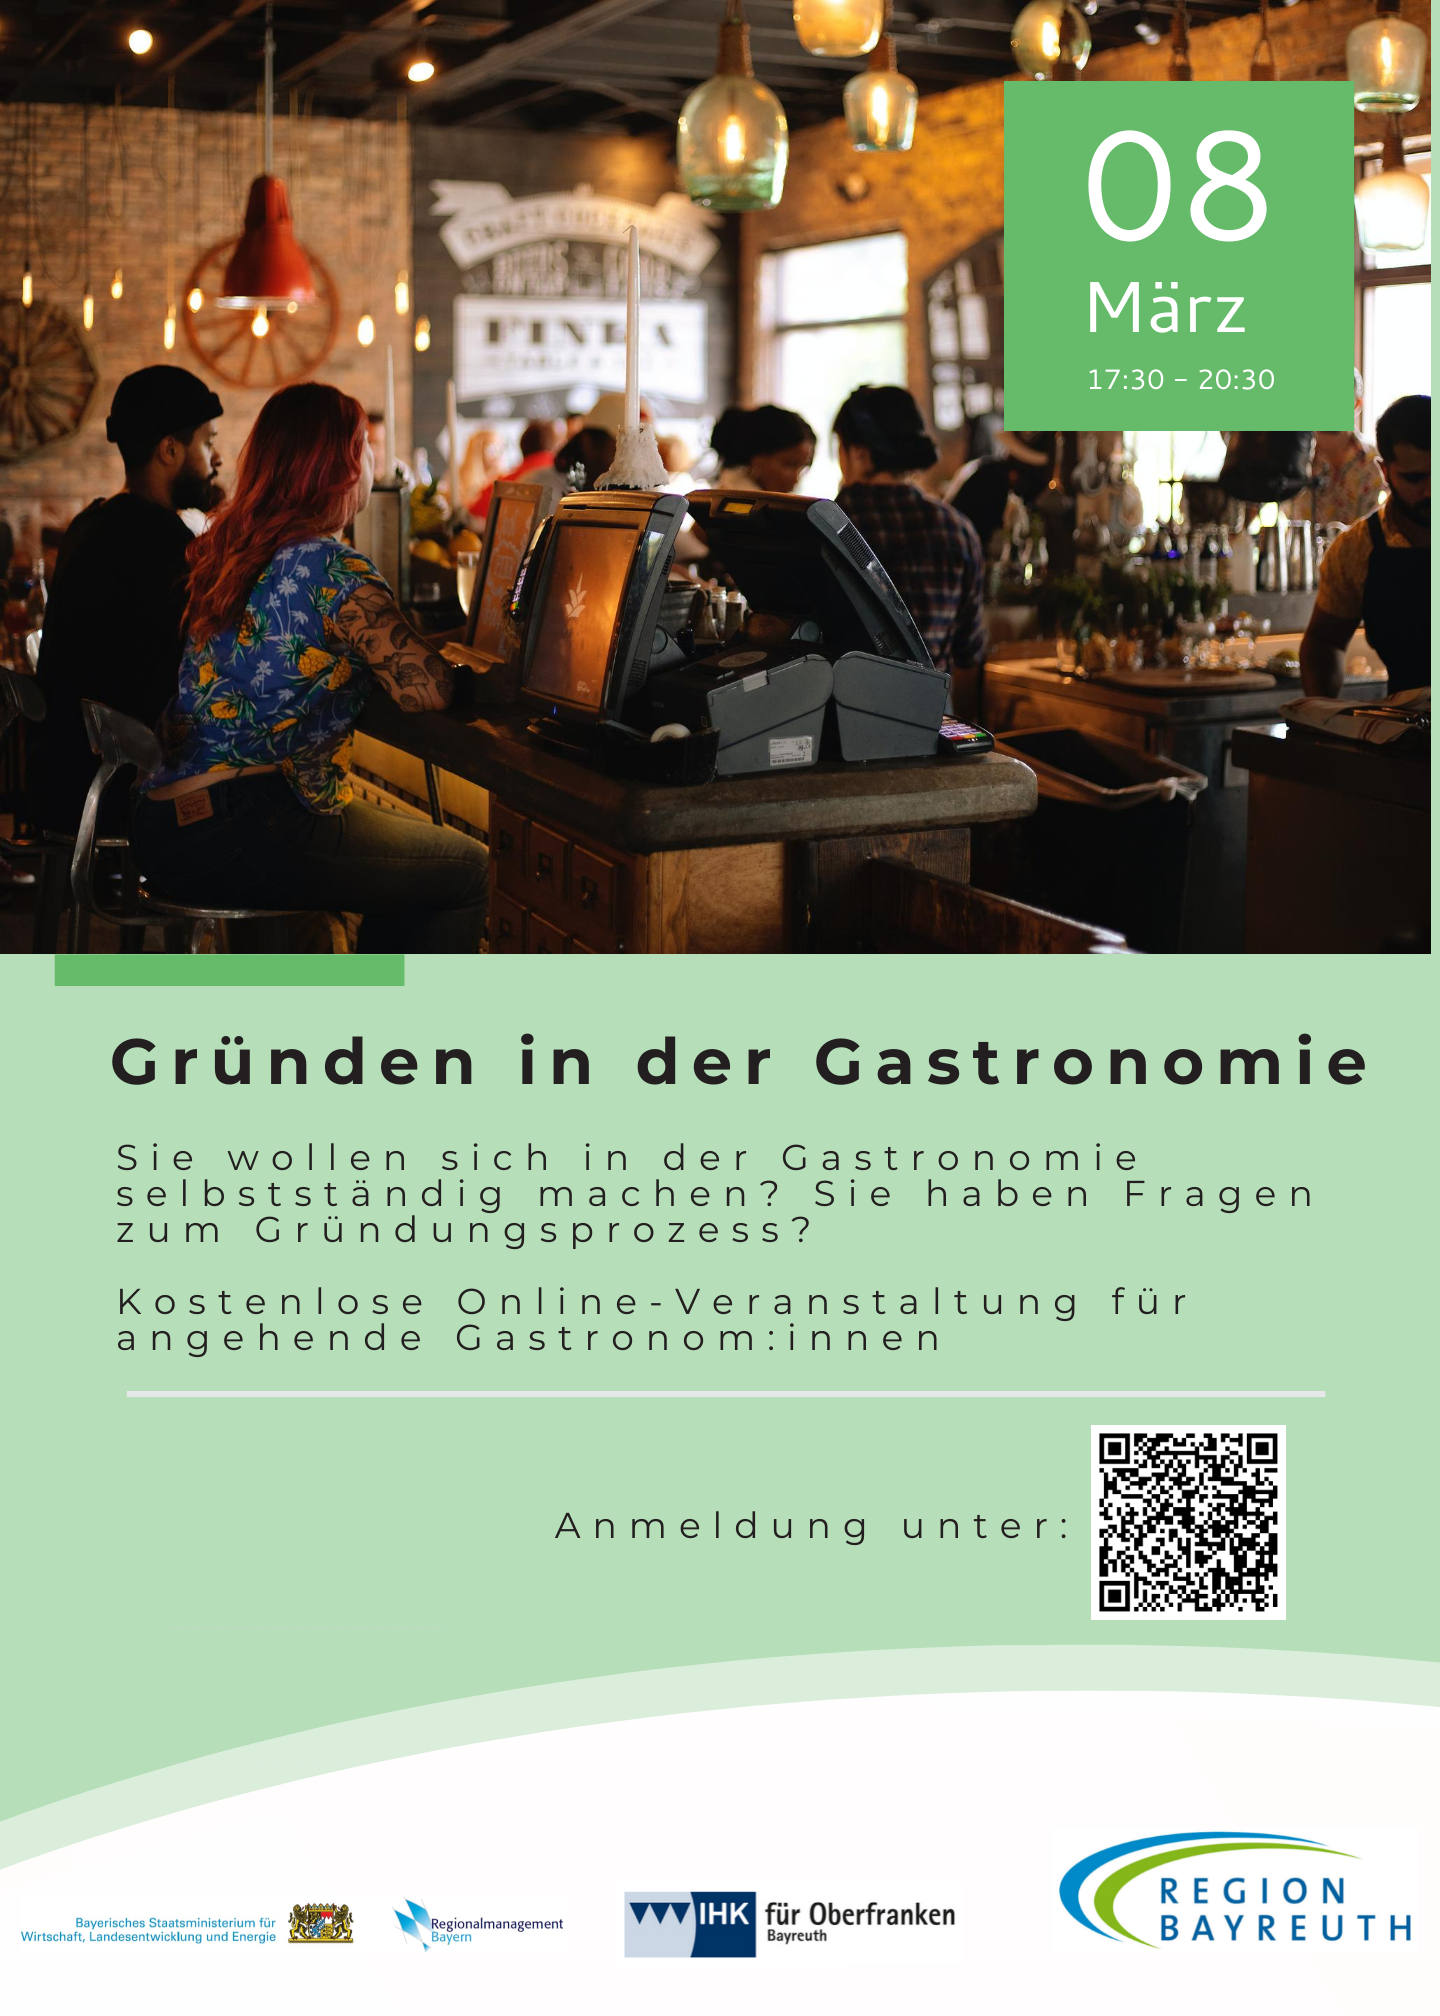 Am 08. März findet einen Informationsveranstaltung zum Thema Gründen in der Gastronomie statt.